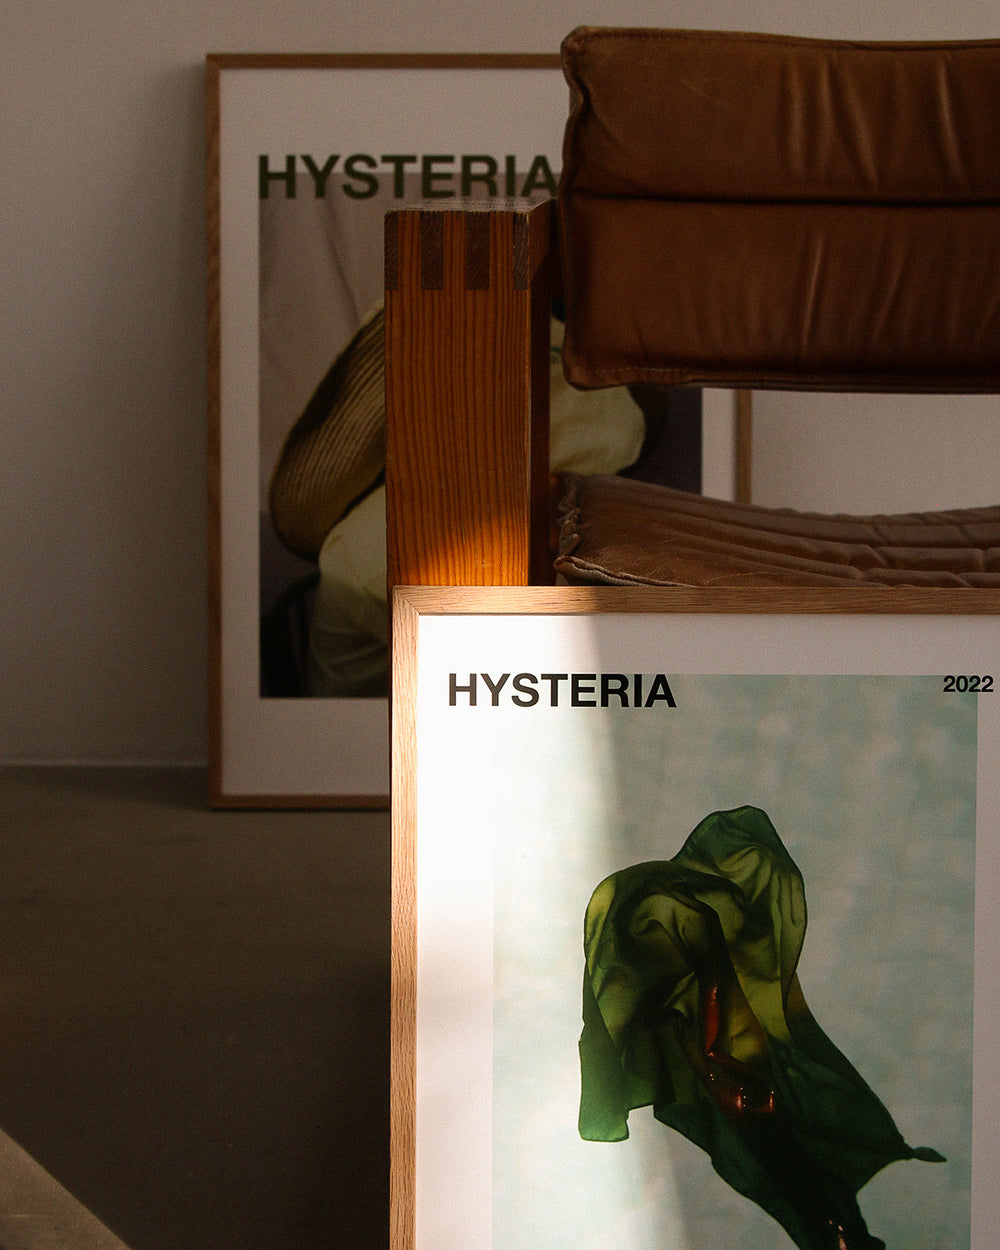 Hysteria by Amanda Gylling - Blogg